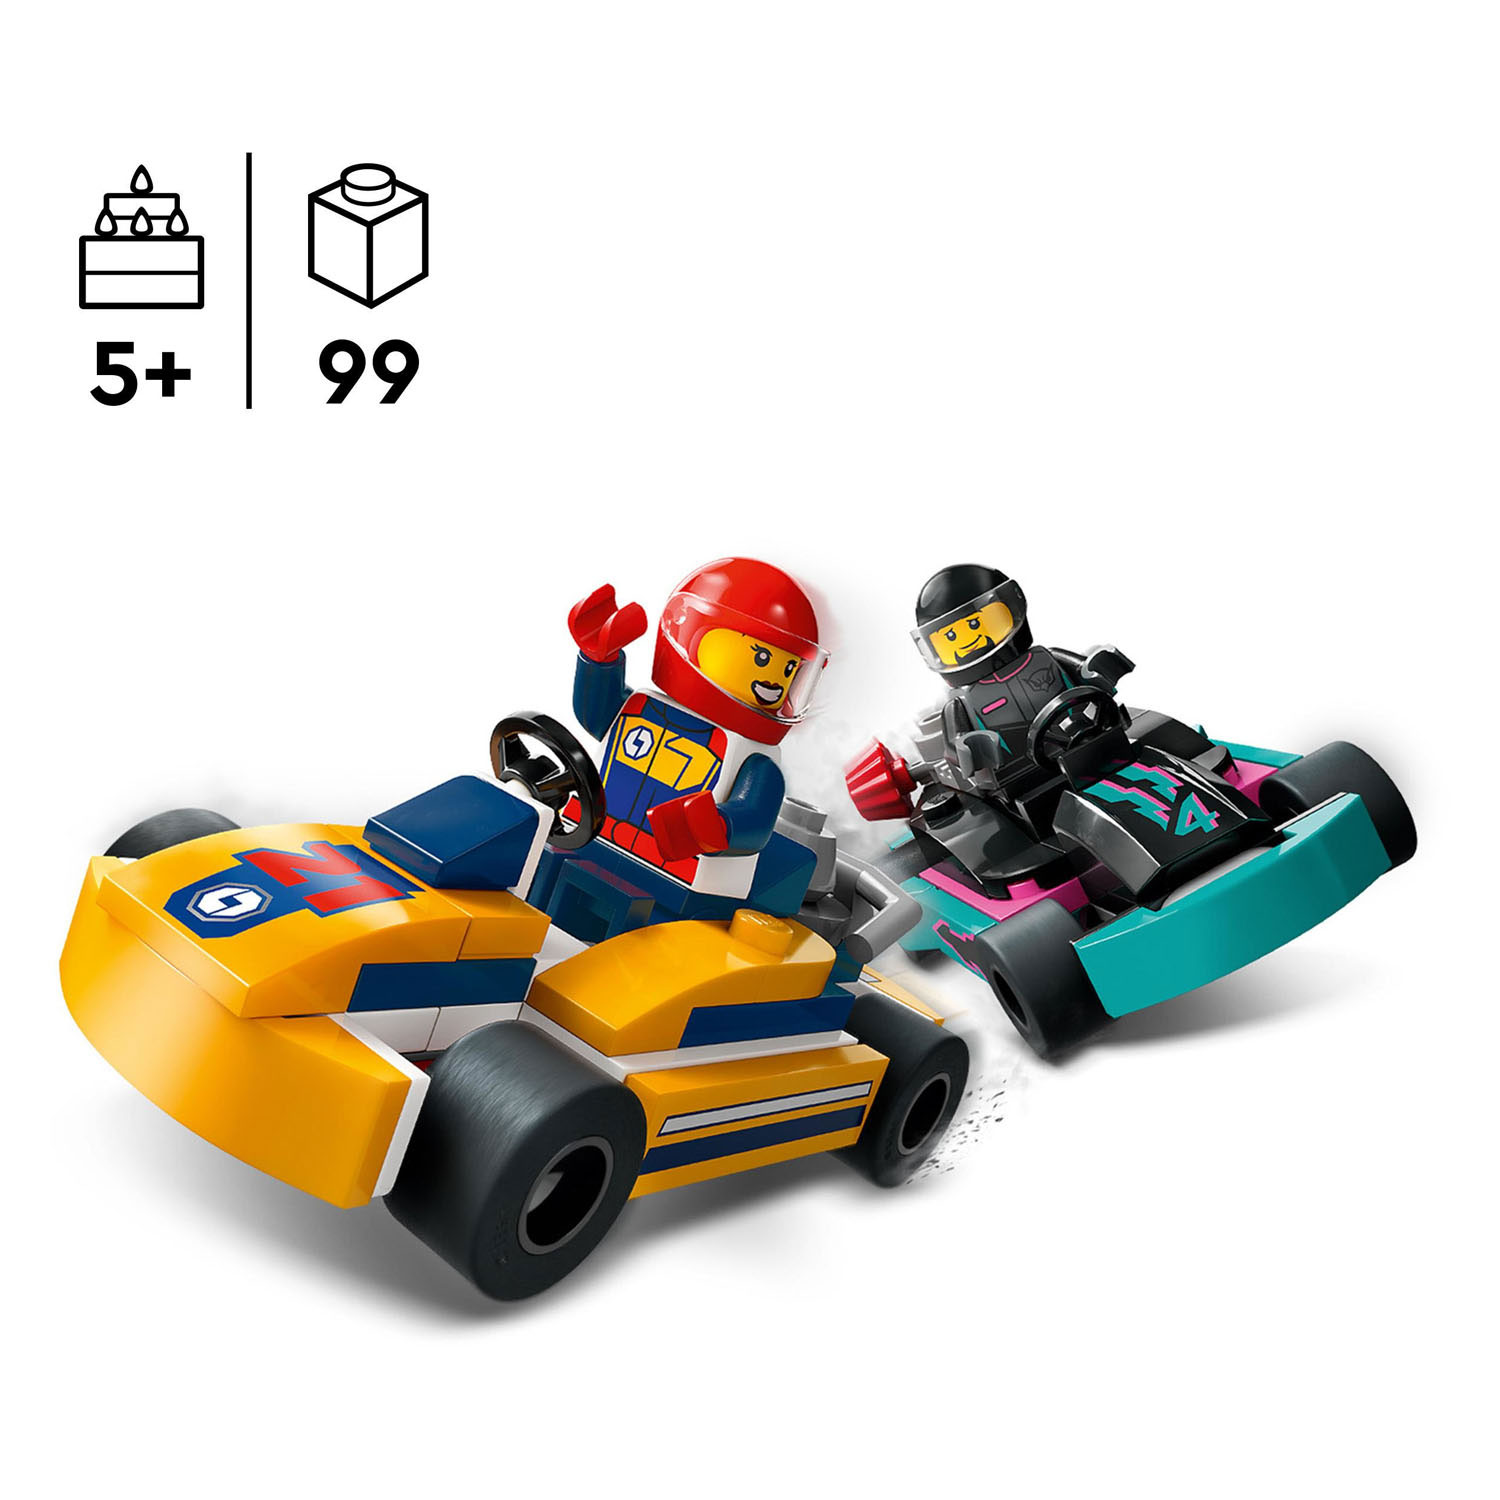 LEGO City 60400 Karts et coureurs